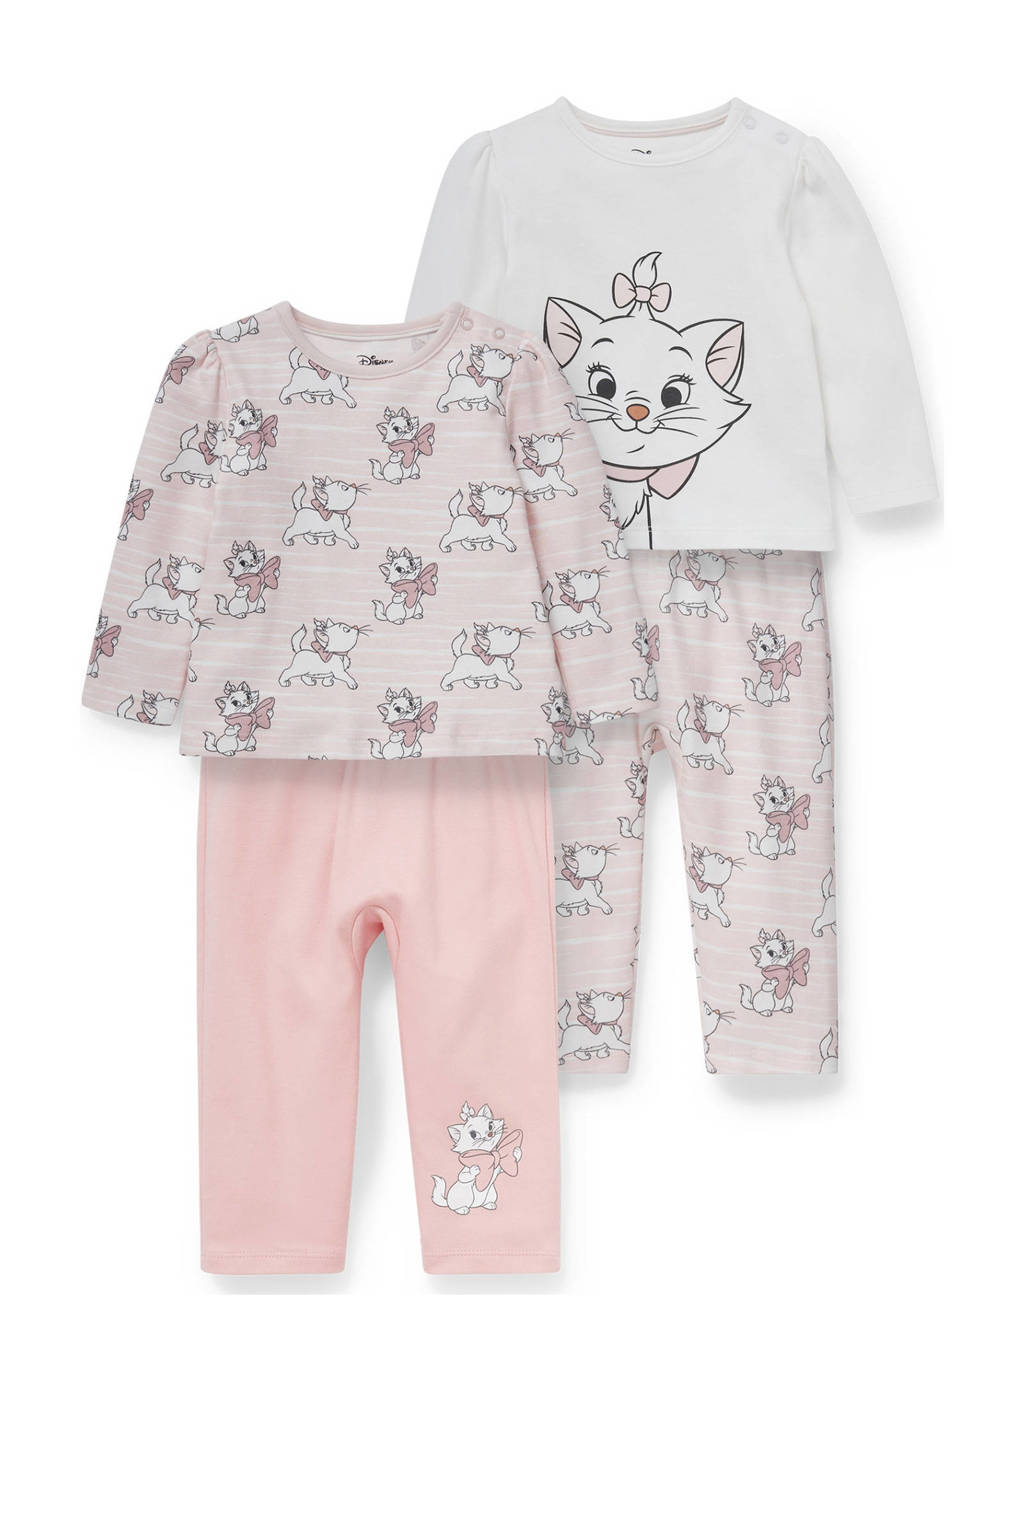 Labe Doe herleven Laag Disney Baby @ C&A pyjama Aristocats - set van 2 roze/wit | wehkamp